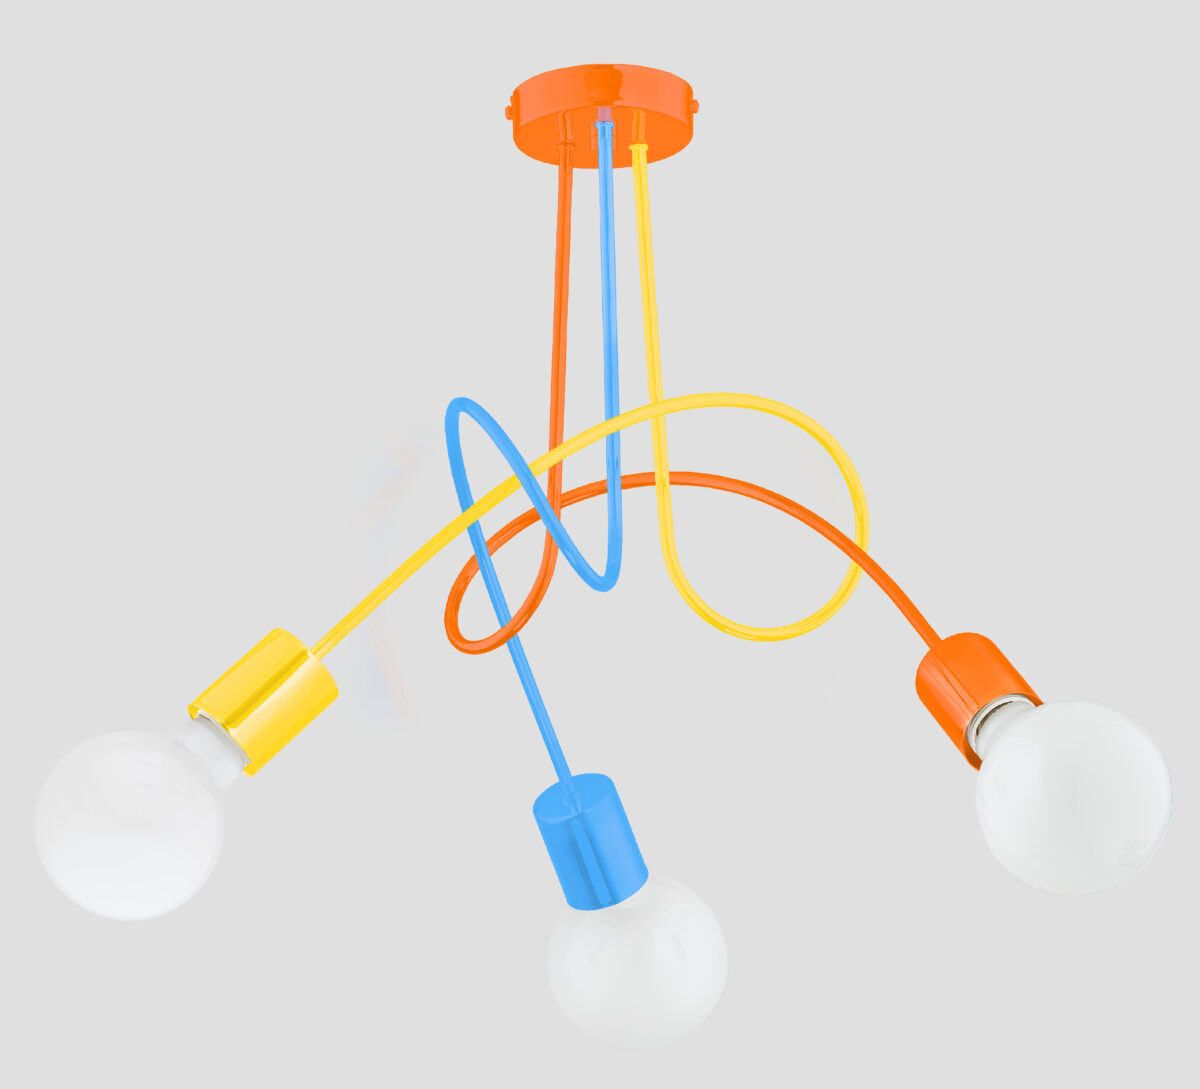 Lampa wisząca 3 punktowa wykonana z metalu w kolorach niebieskim, pomarańczowym i żółtym.